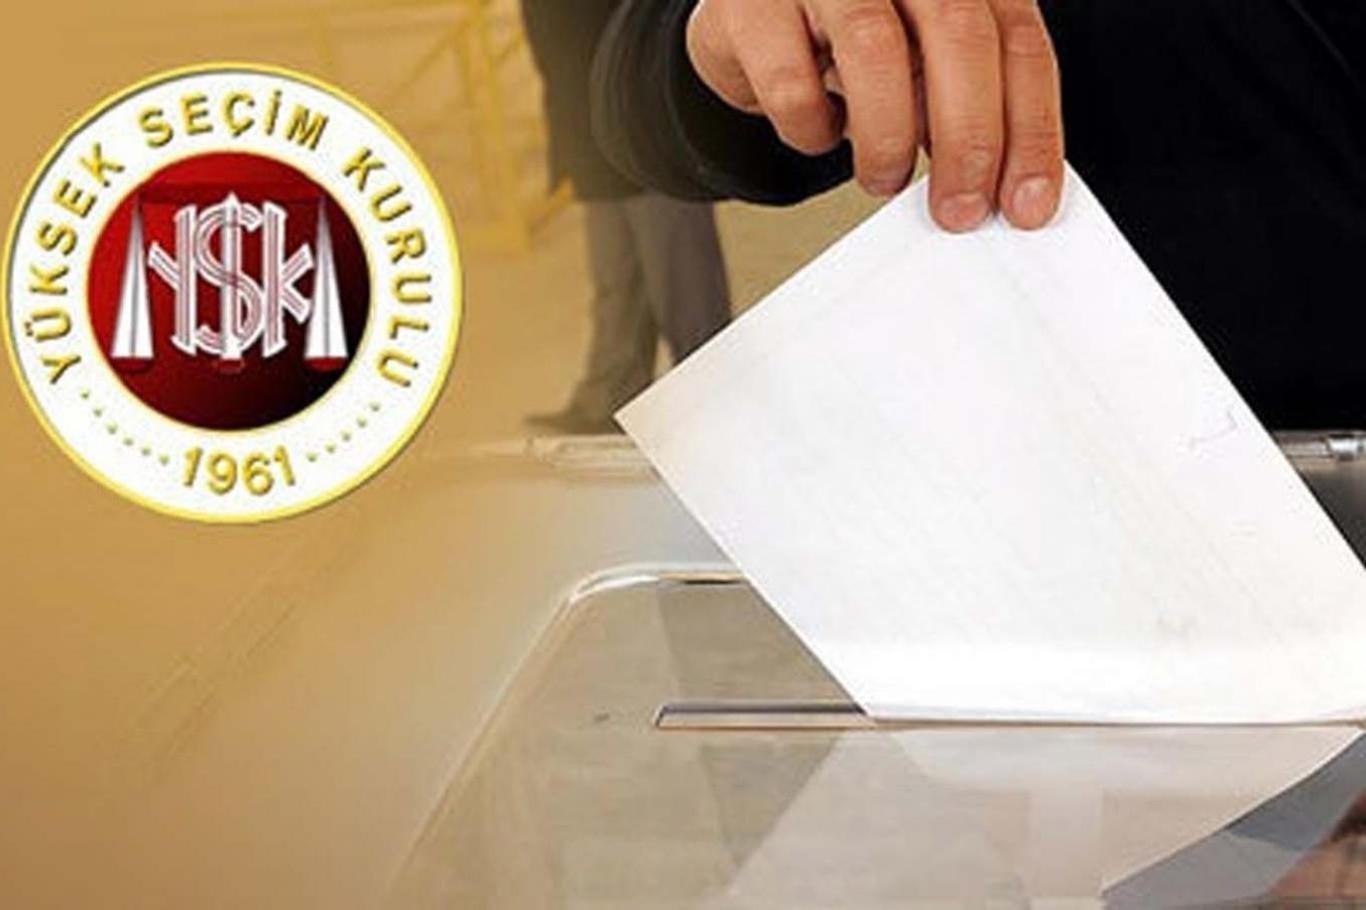 YSK, İstanbul seçimine dair esasları açıkladı